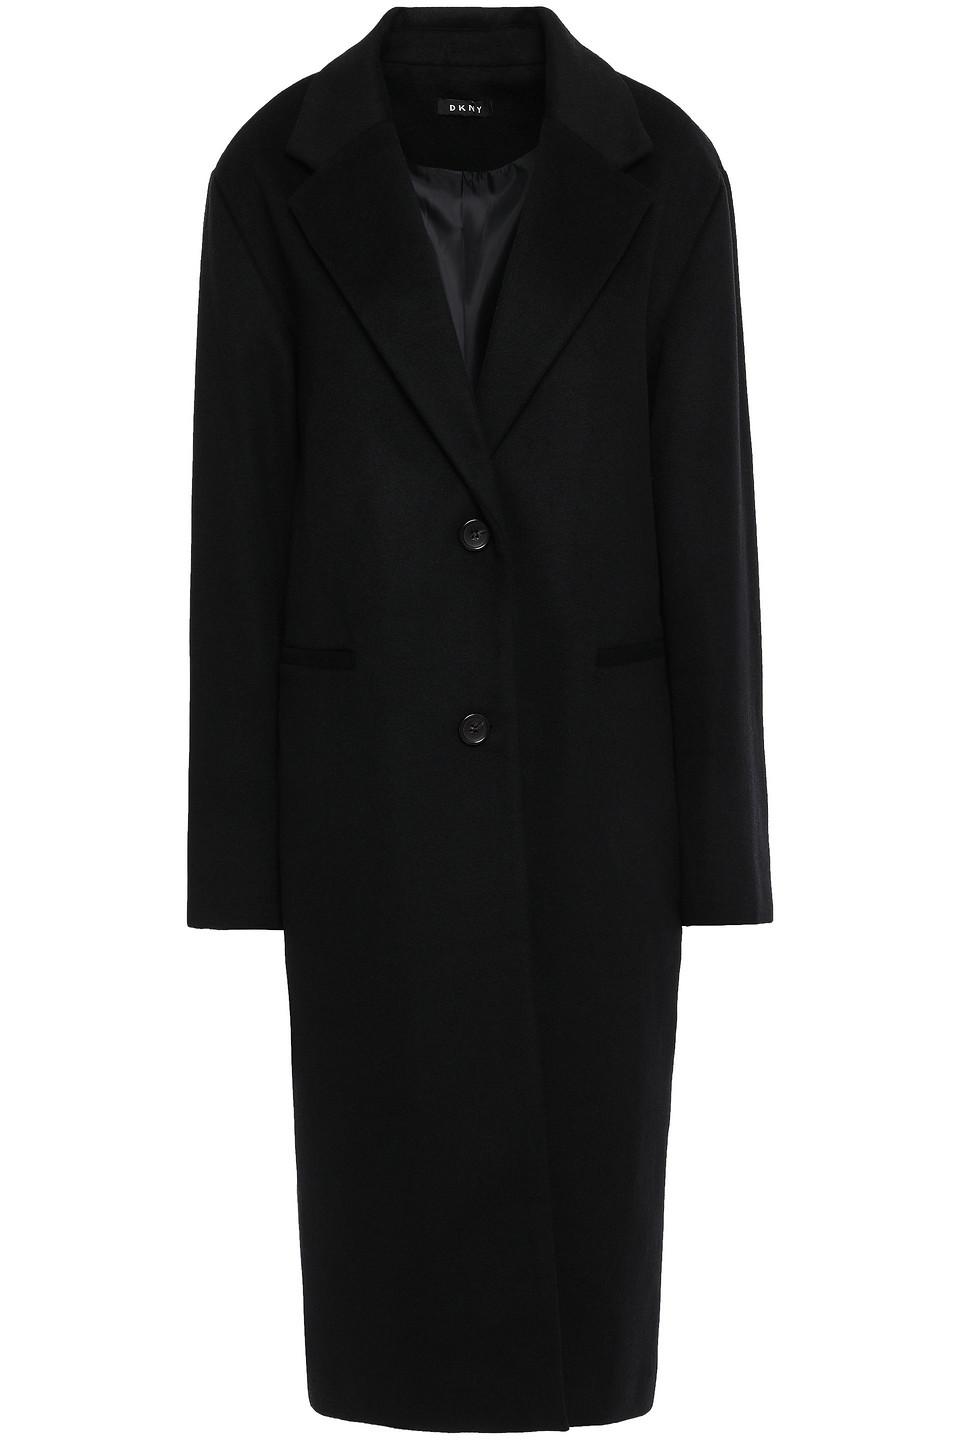 DKNY Wool-blend Felt Coat Black - Lyst